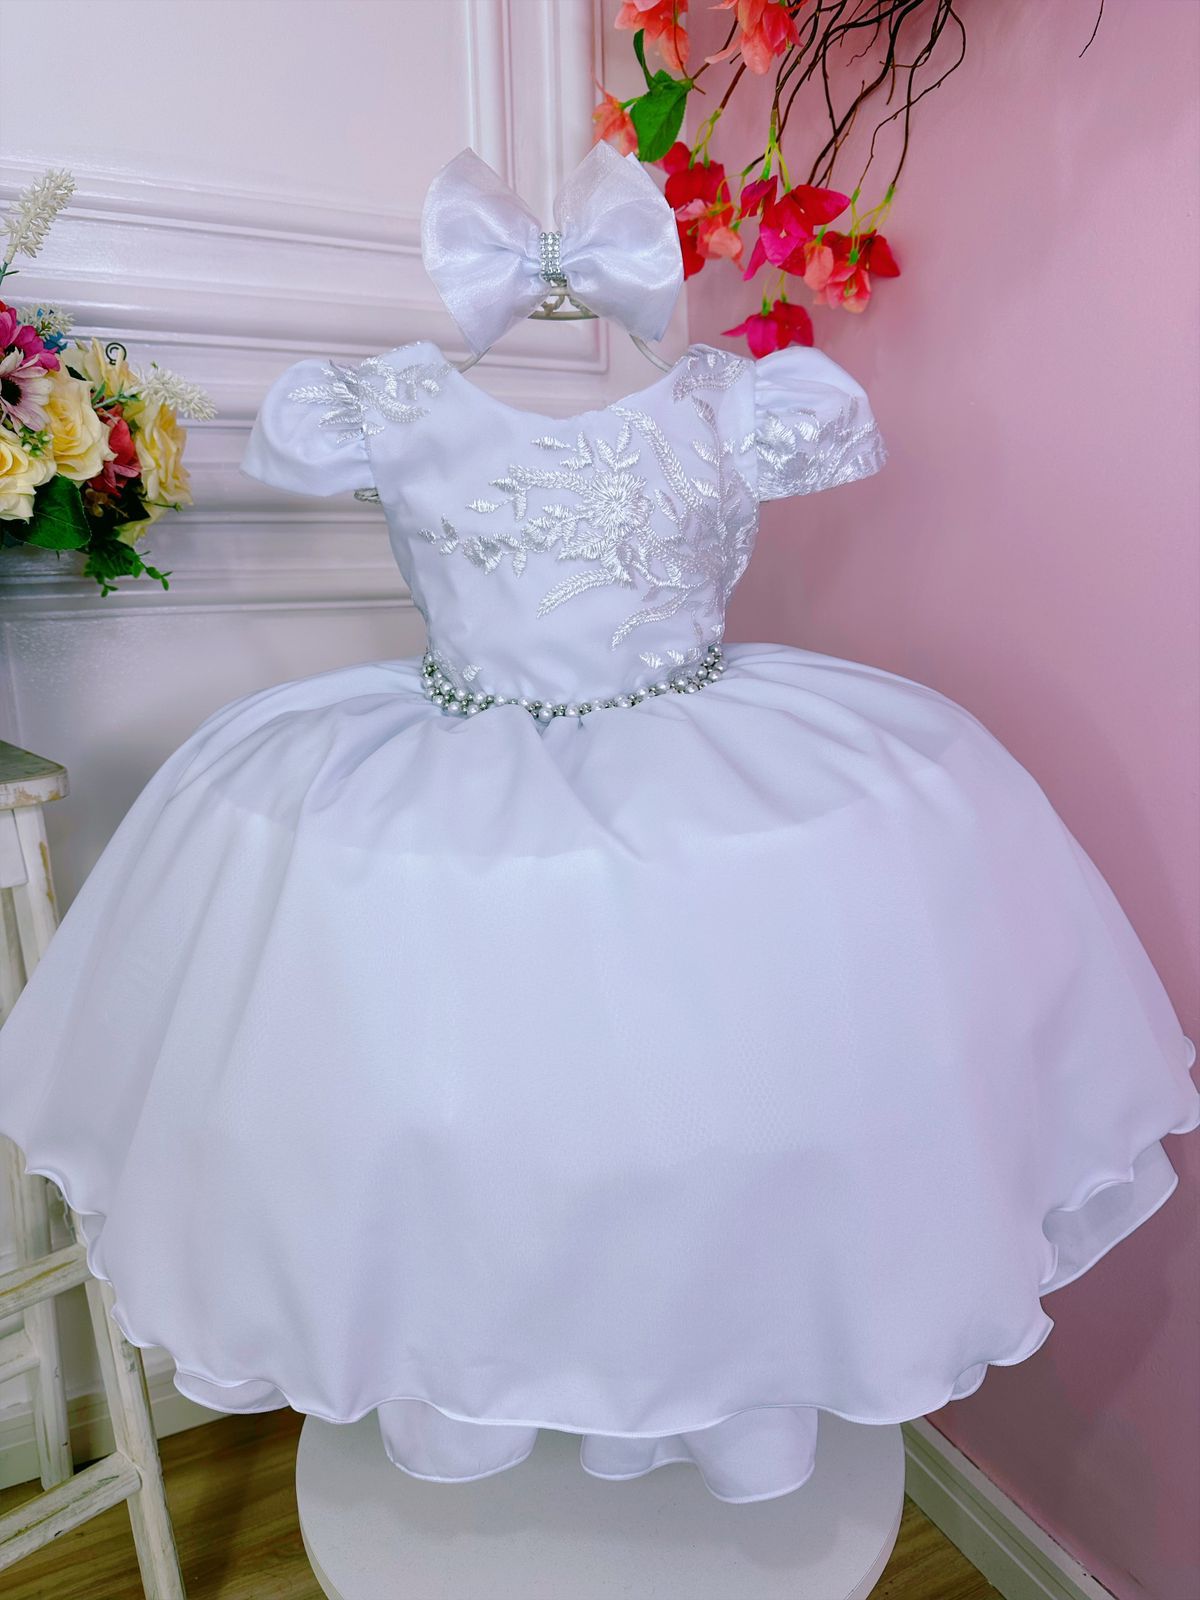 Vestido Infantil Branco Renda Cinto de Pérolas C/Tiara Luxo